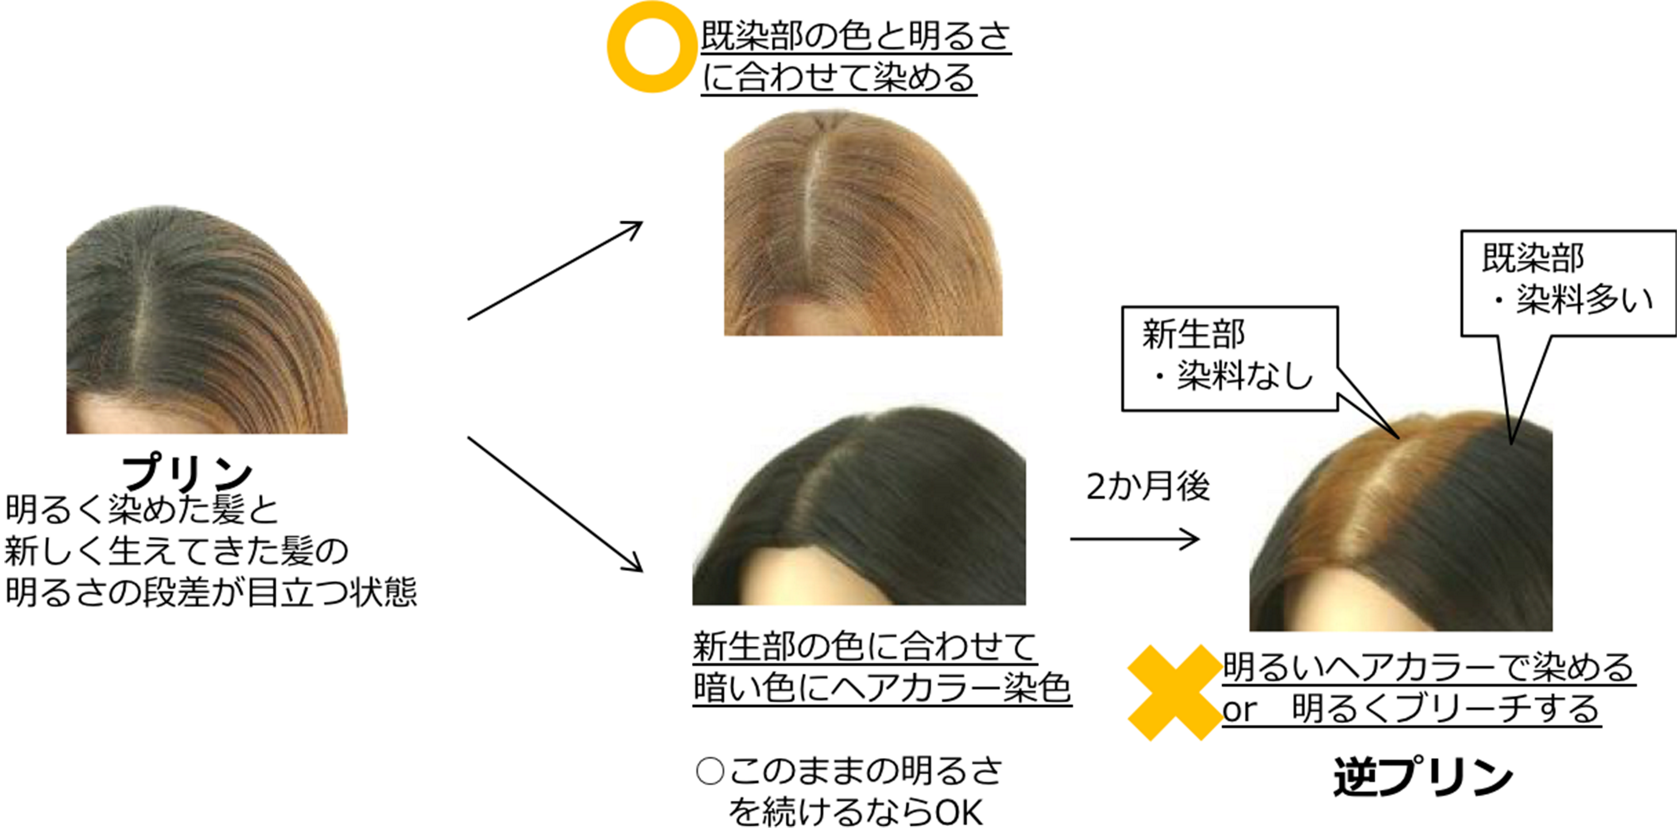 0以上 プリン ヘア カラー インスピレーションのための髪型画像 Kamigatapepper